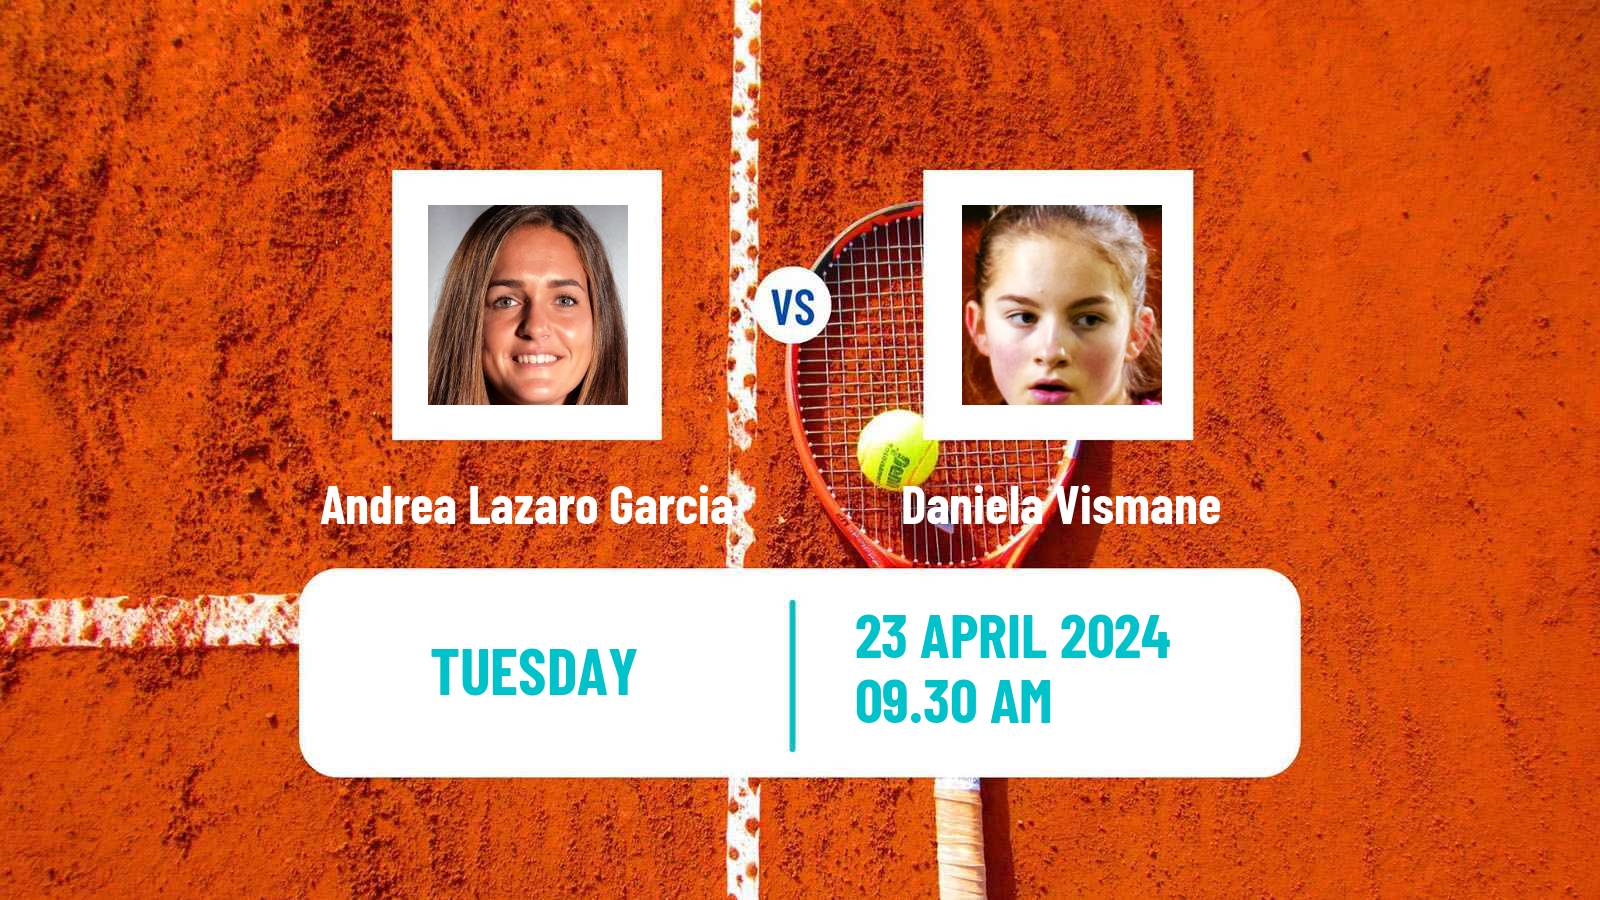 Tennis ITF W35 Santa Margherita Di Pula 5 Women Andrea Lazaro Garcia - Daniela Vismane